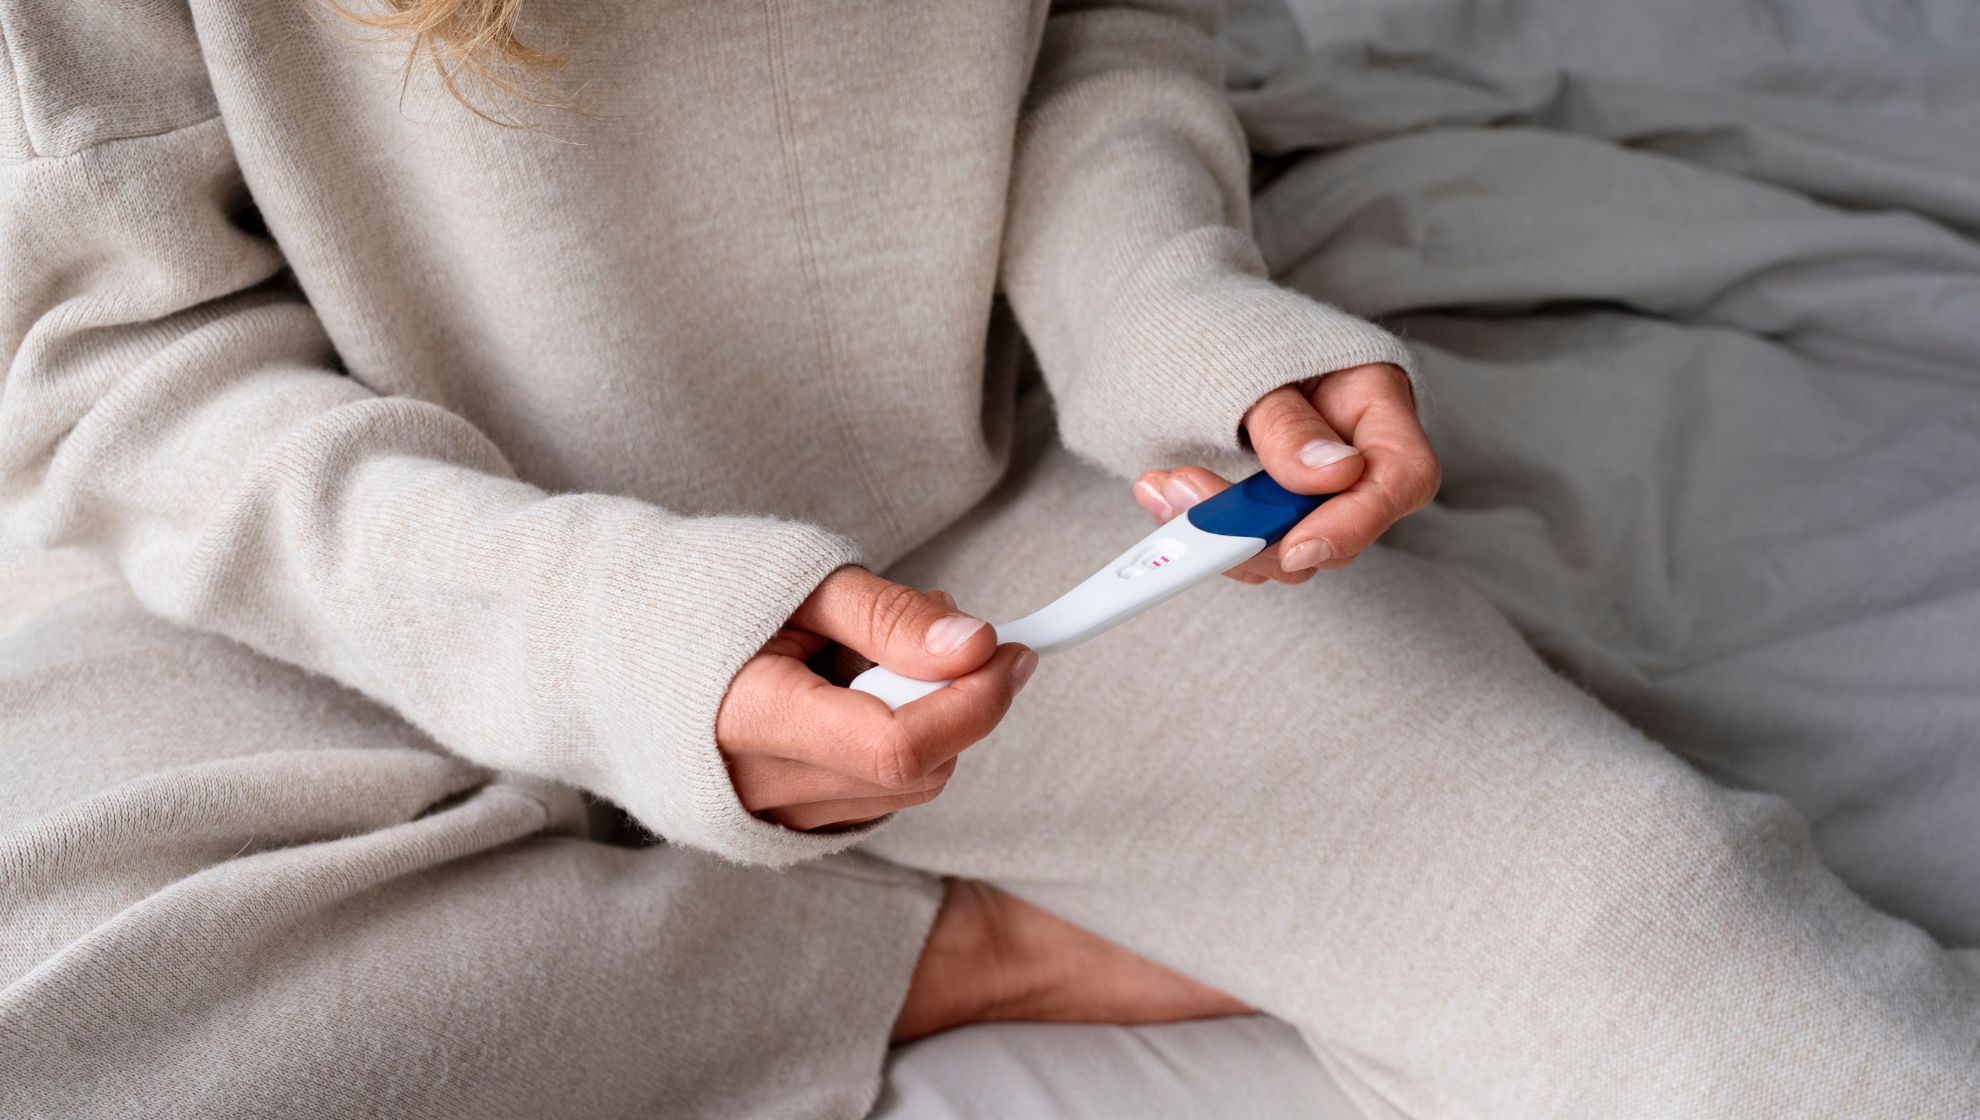 Test ciążowy może dawać fałszywy wynik. Kiedy jest najbardziej wiarygodny?